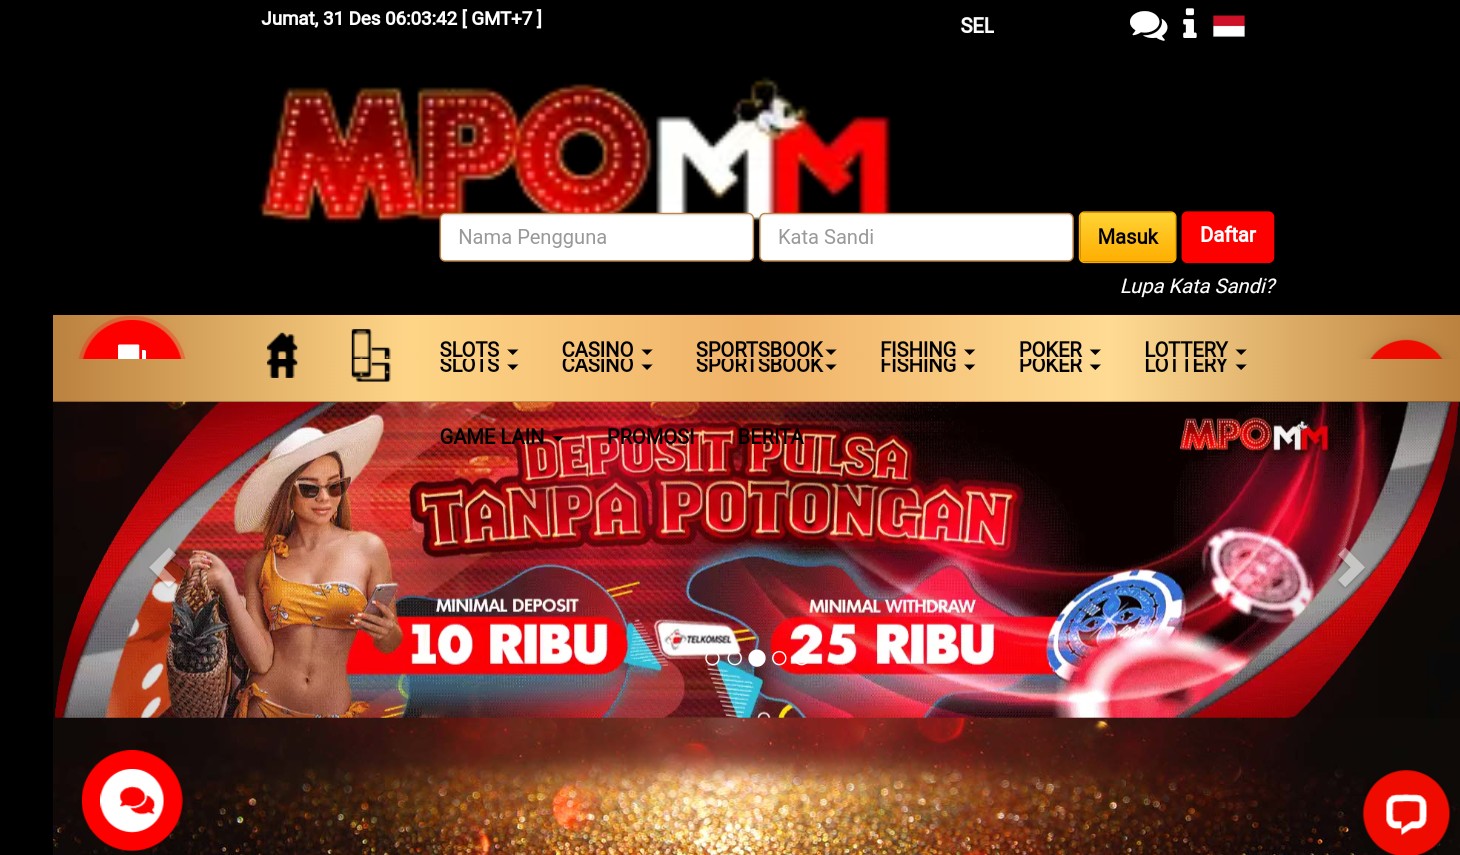 MpoMM  - Situs Slot, dan Situs Lottery Terpercaya